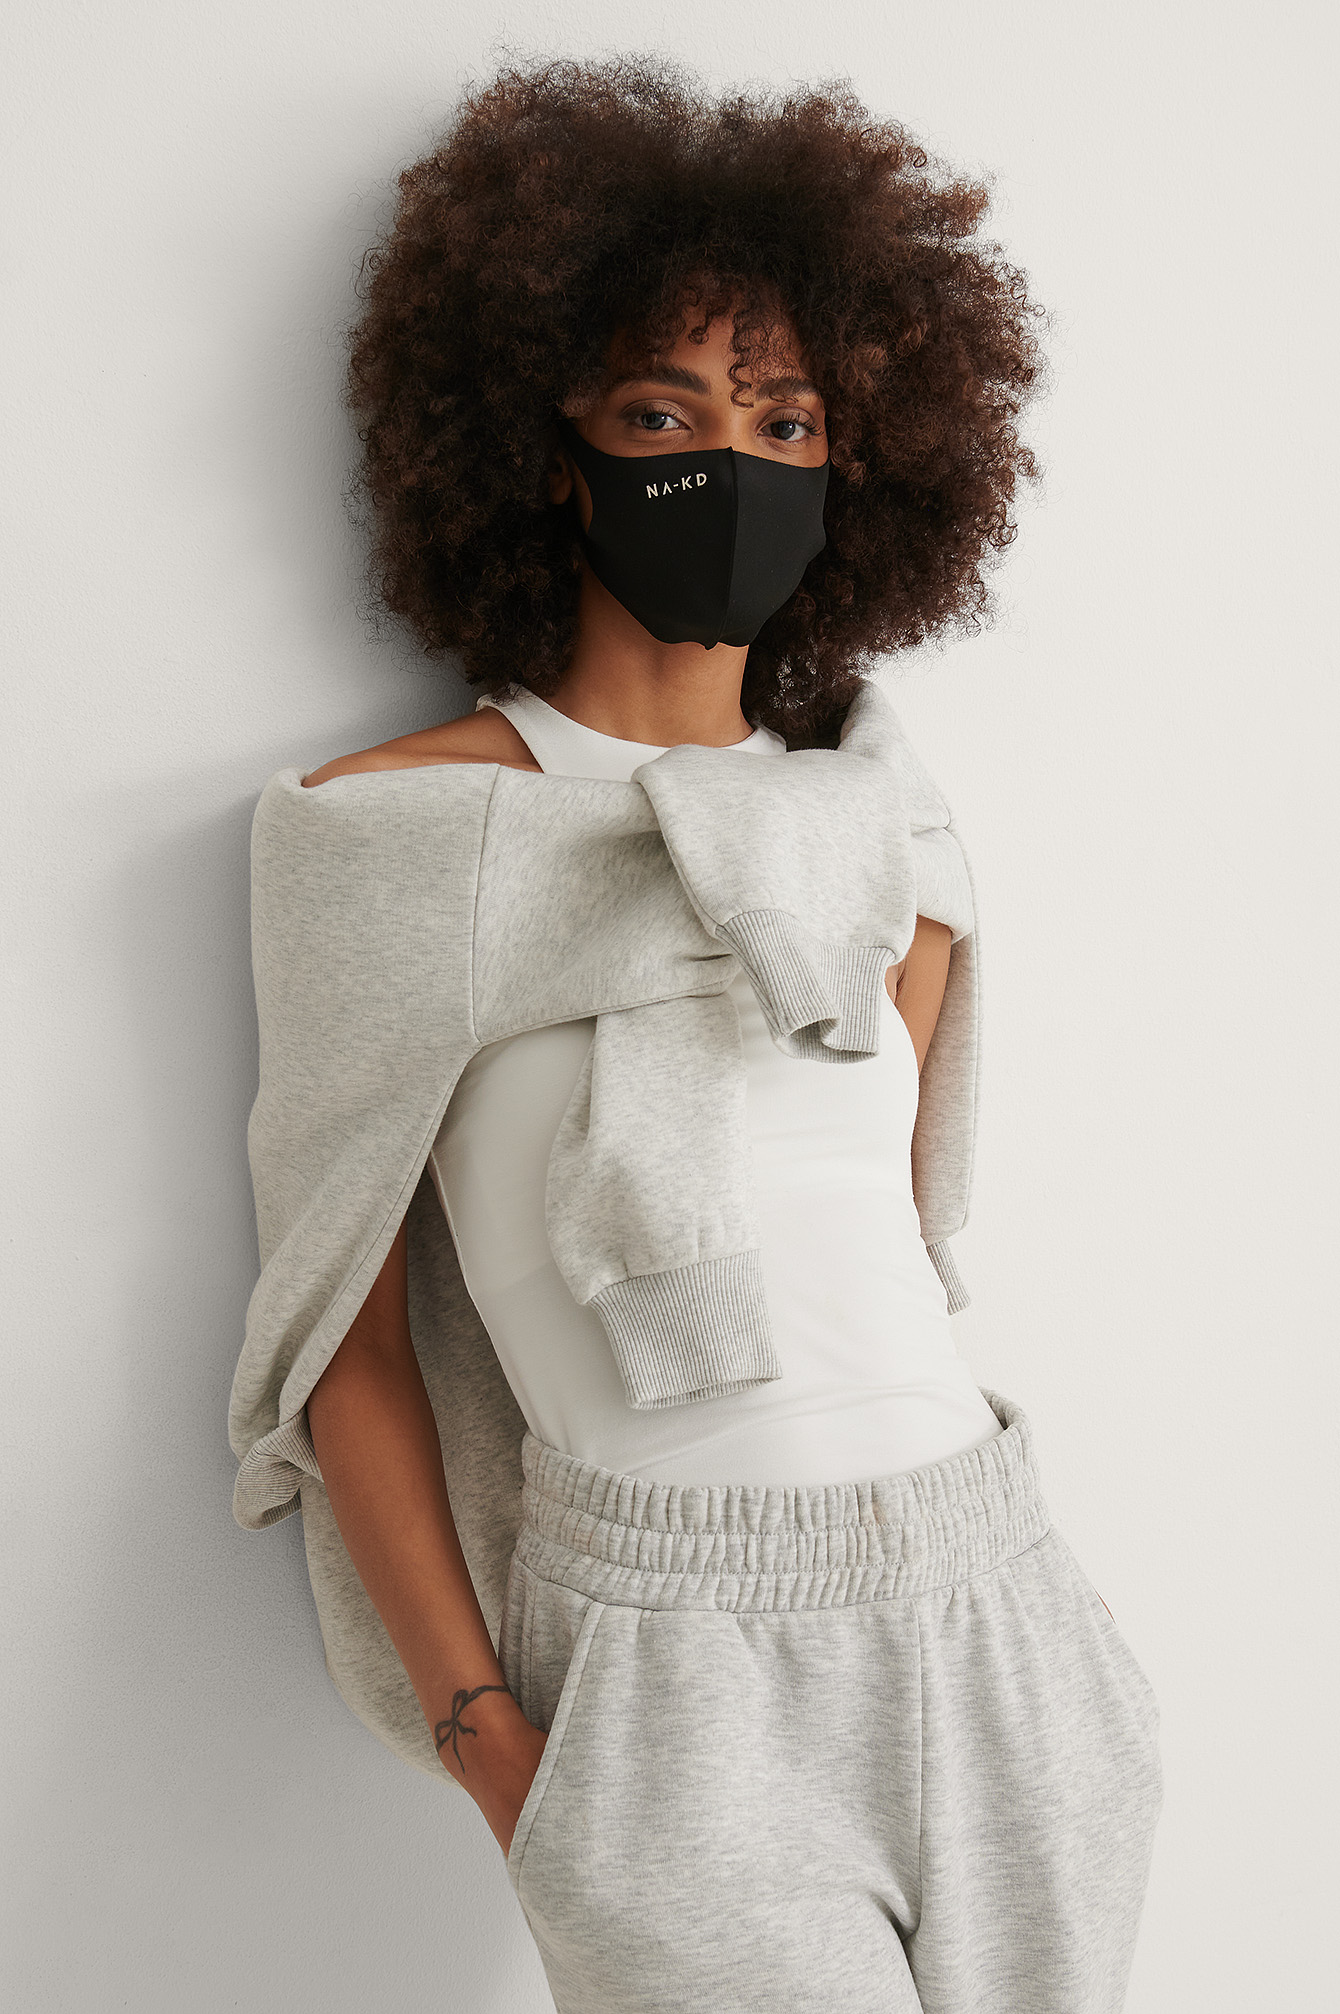 Black Masque fashion - Non-médical